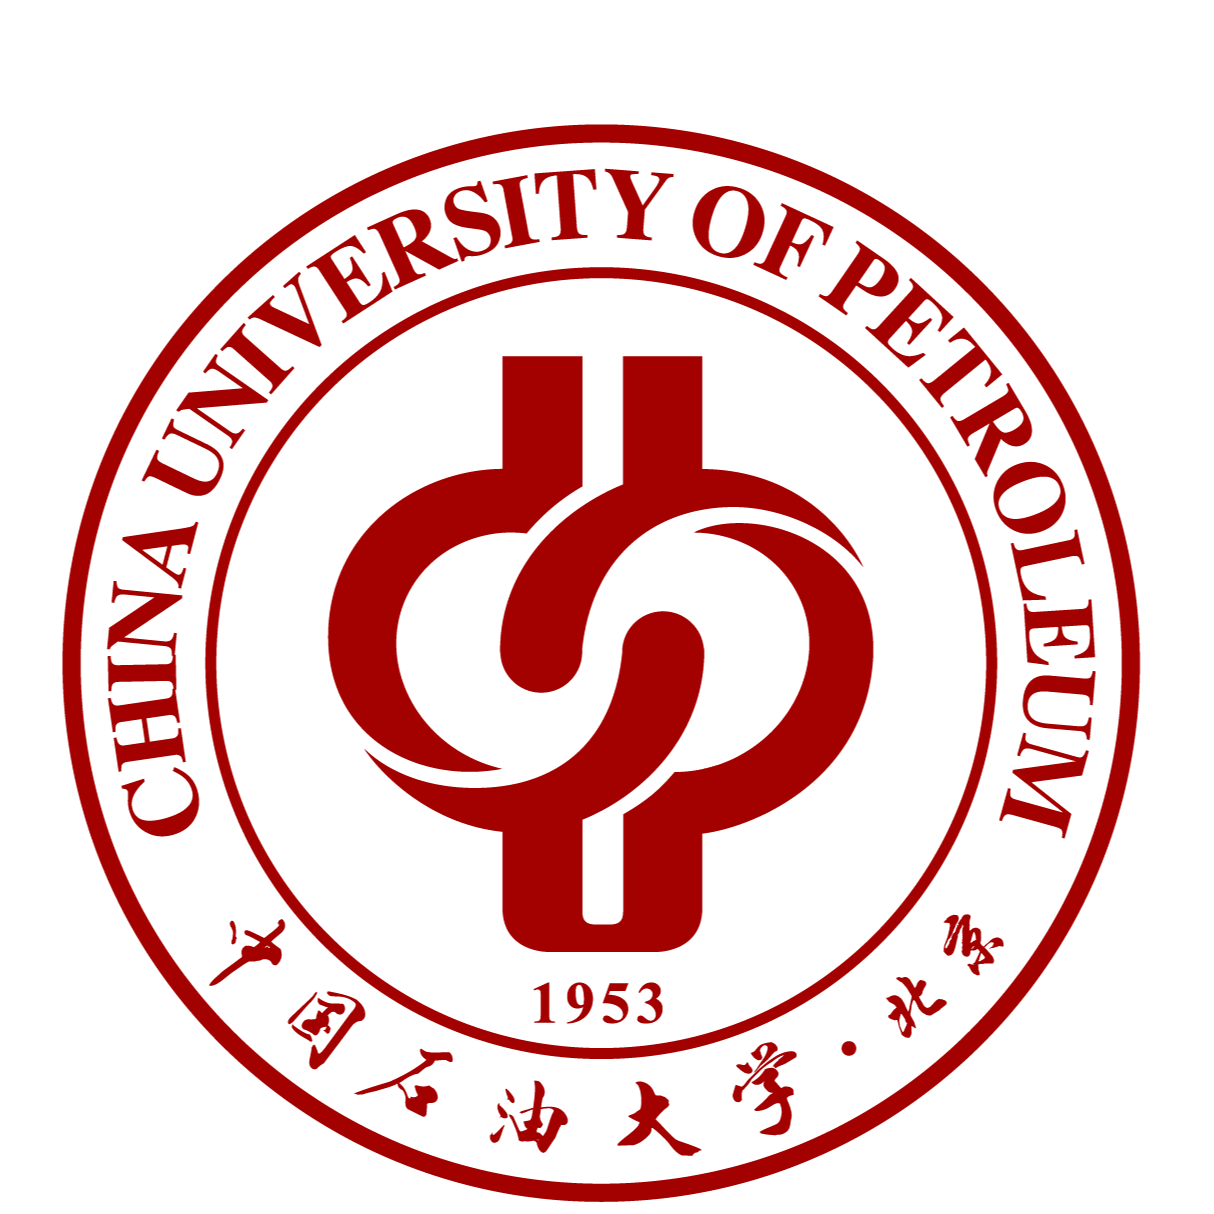 中国石油大学(北京)克拉玛依校区